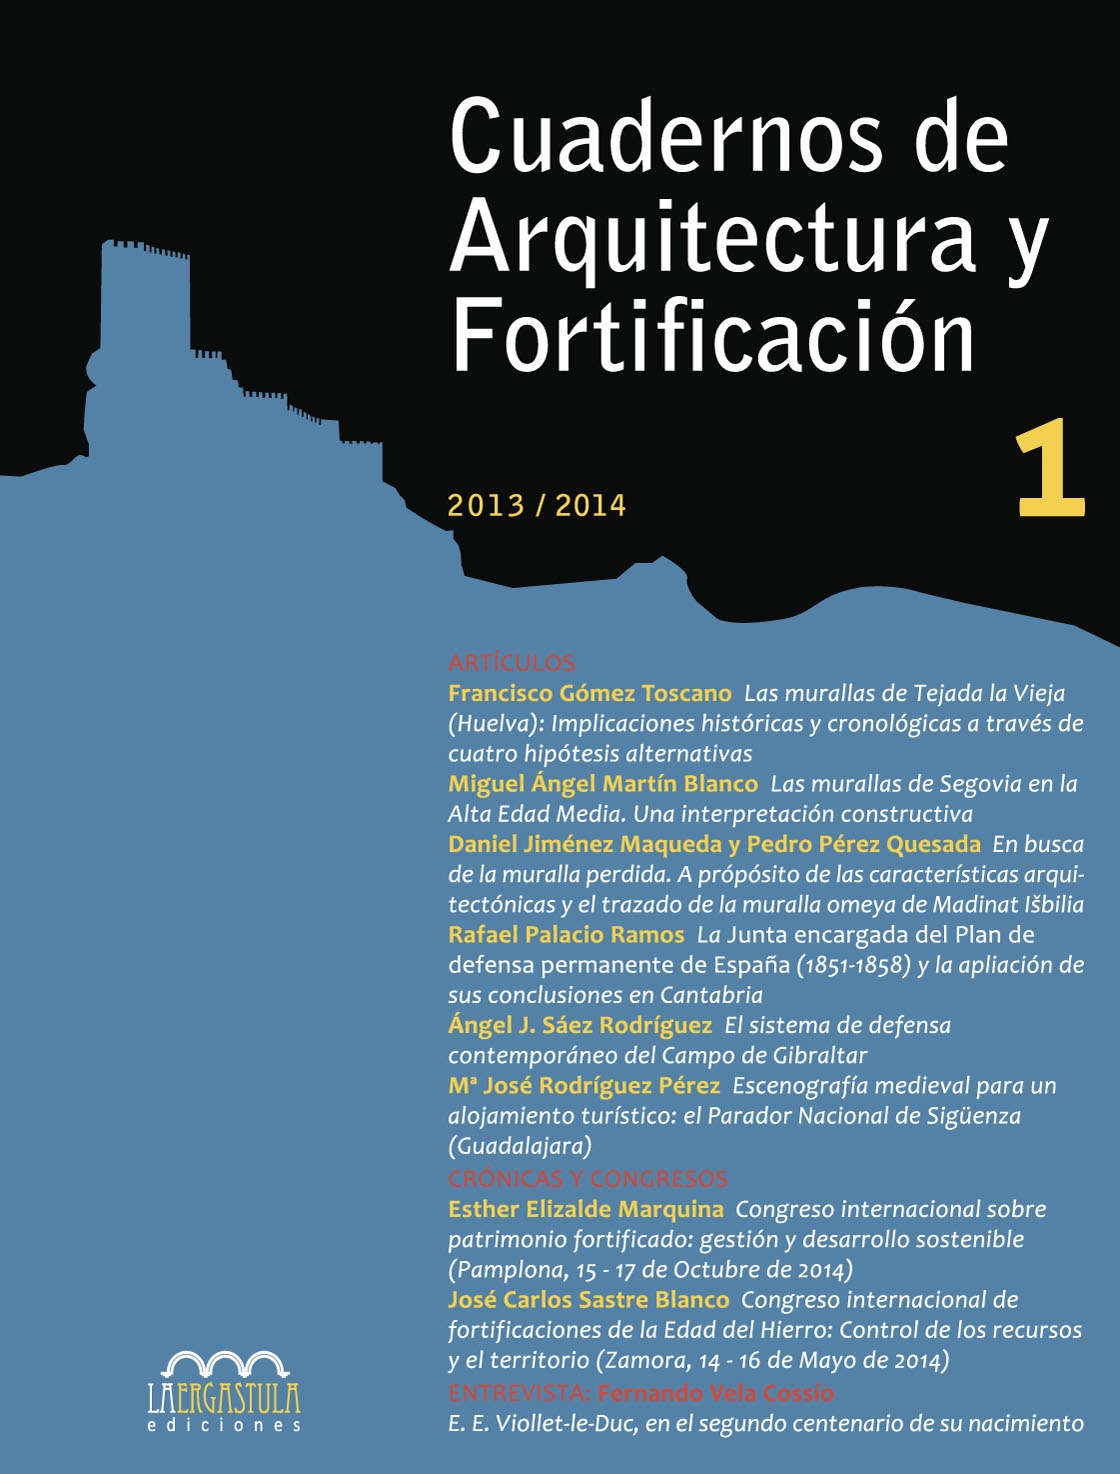 Cuadernos de Arquitectura y Fortificación, Nº 1, año 2013-2014